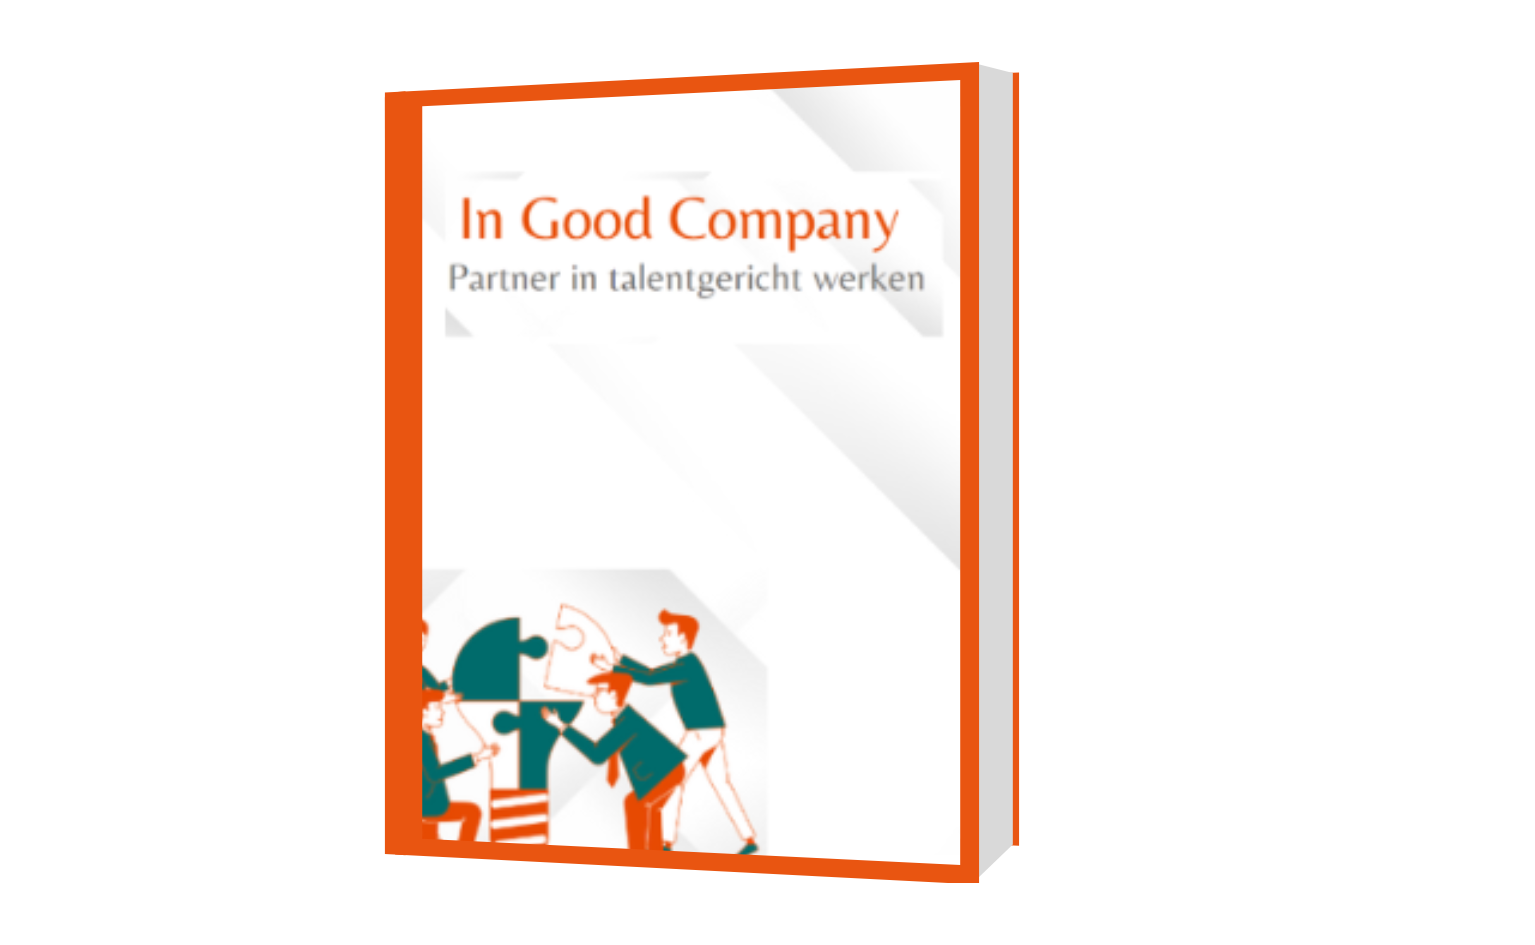 Afbeelding van een boek met als titels In Good Company